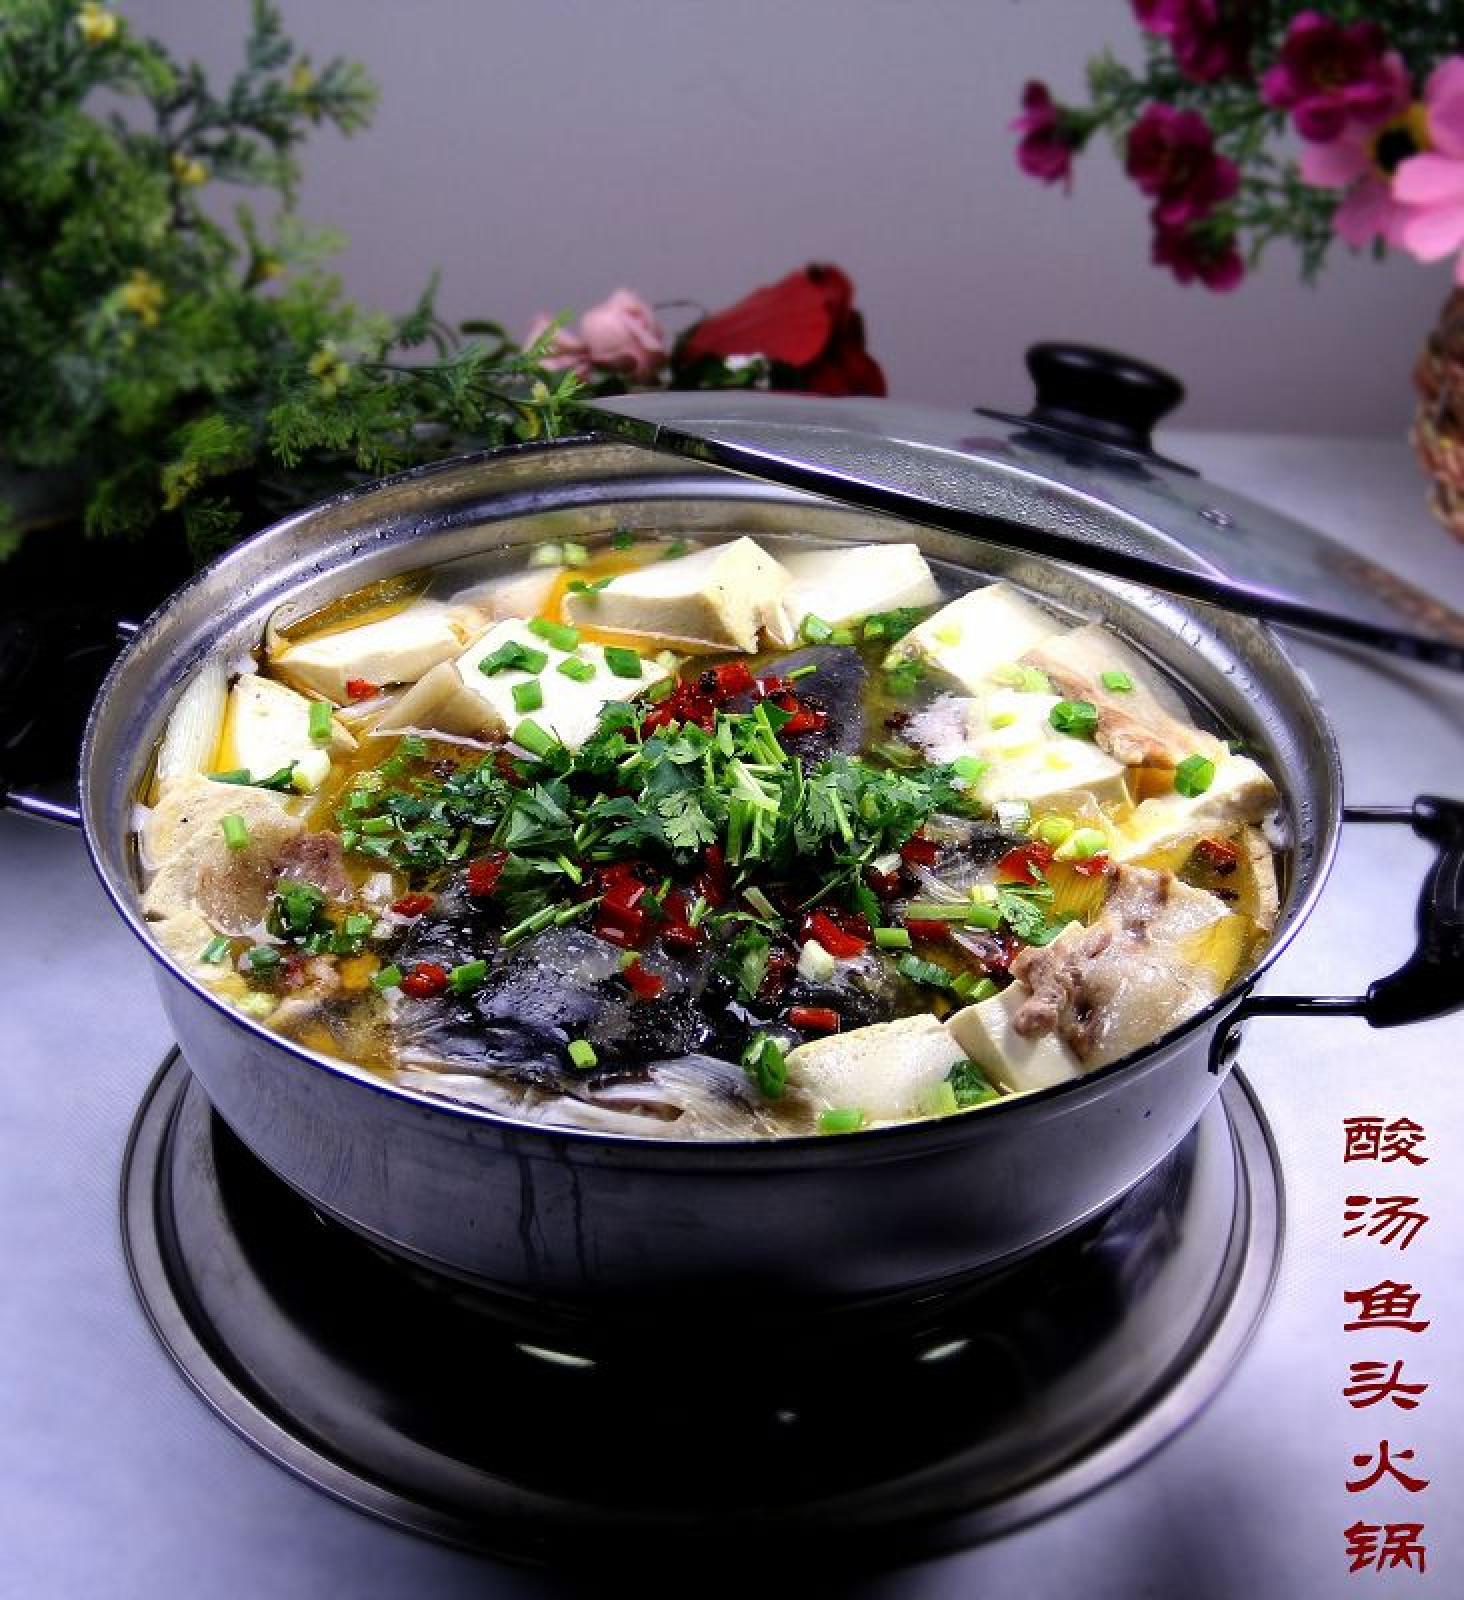 青花椒砂锅鱼的做法大全_青花椒砂锅鱼的家常做法 - 心食神